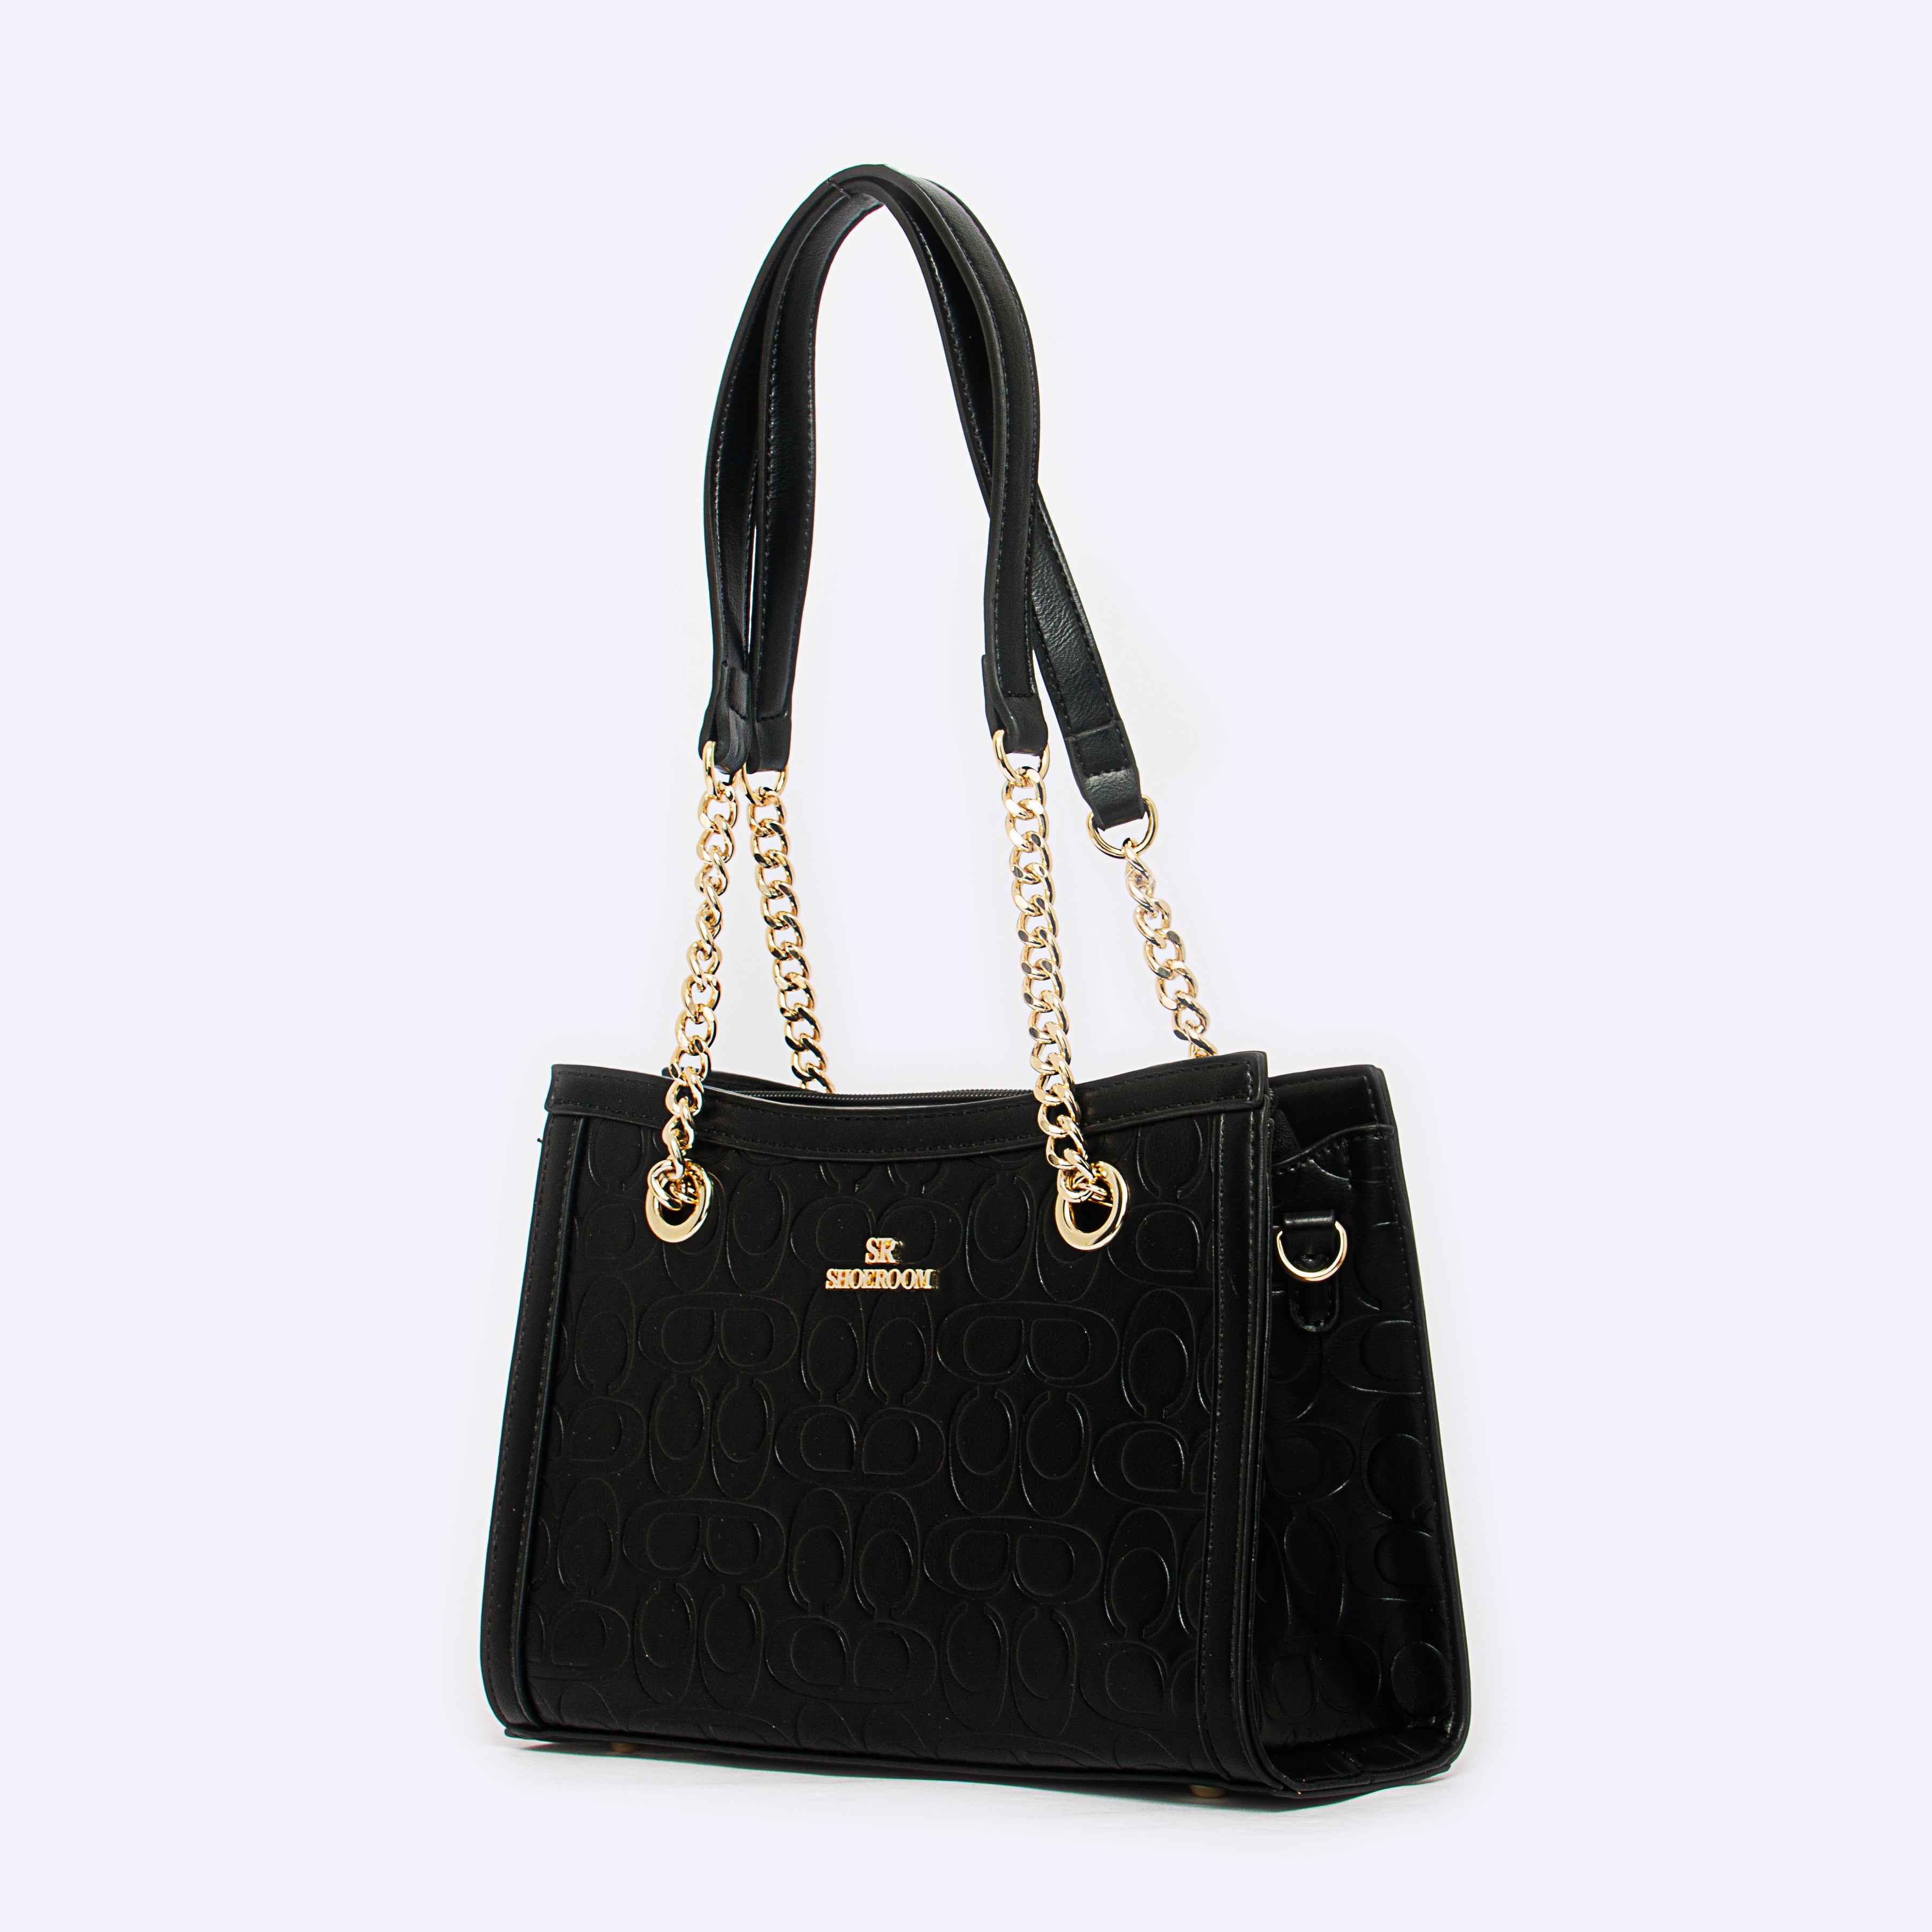 Shoeroom Woman Handbags B1462